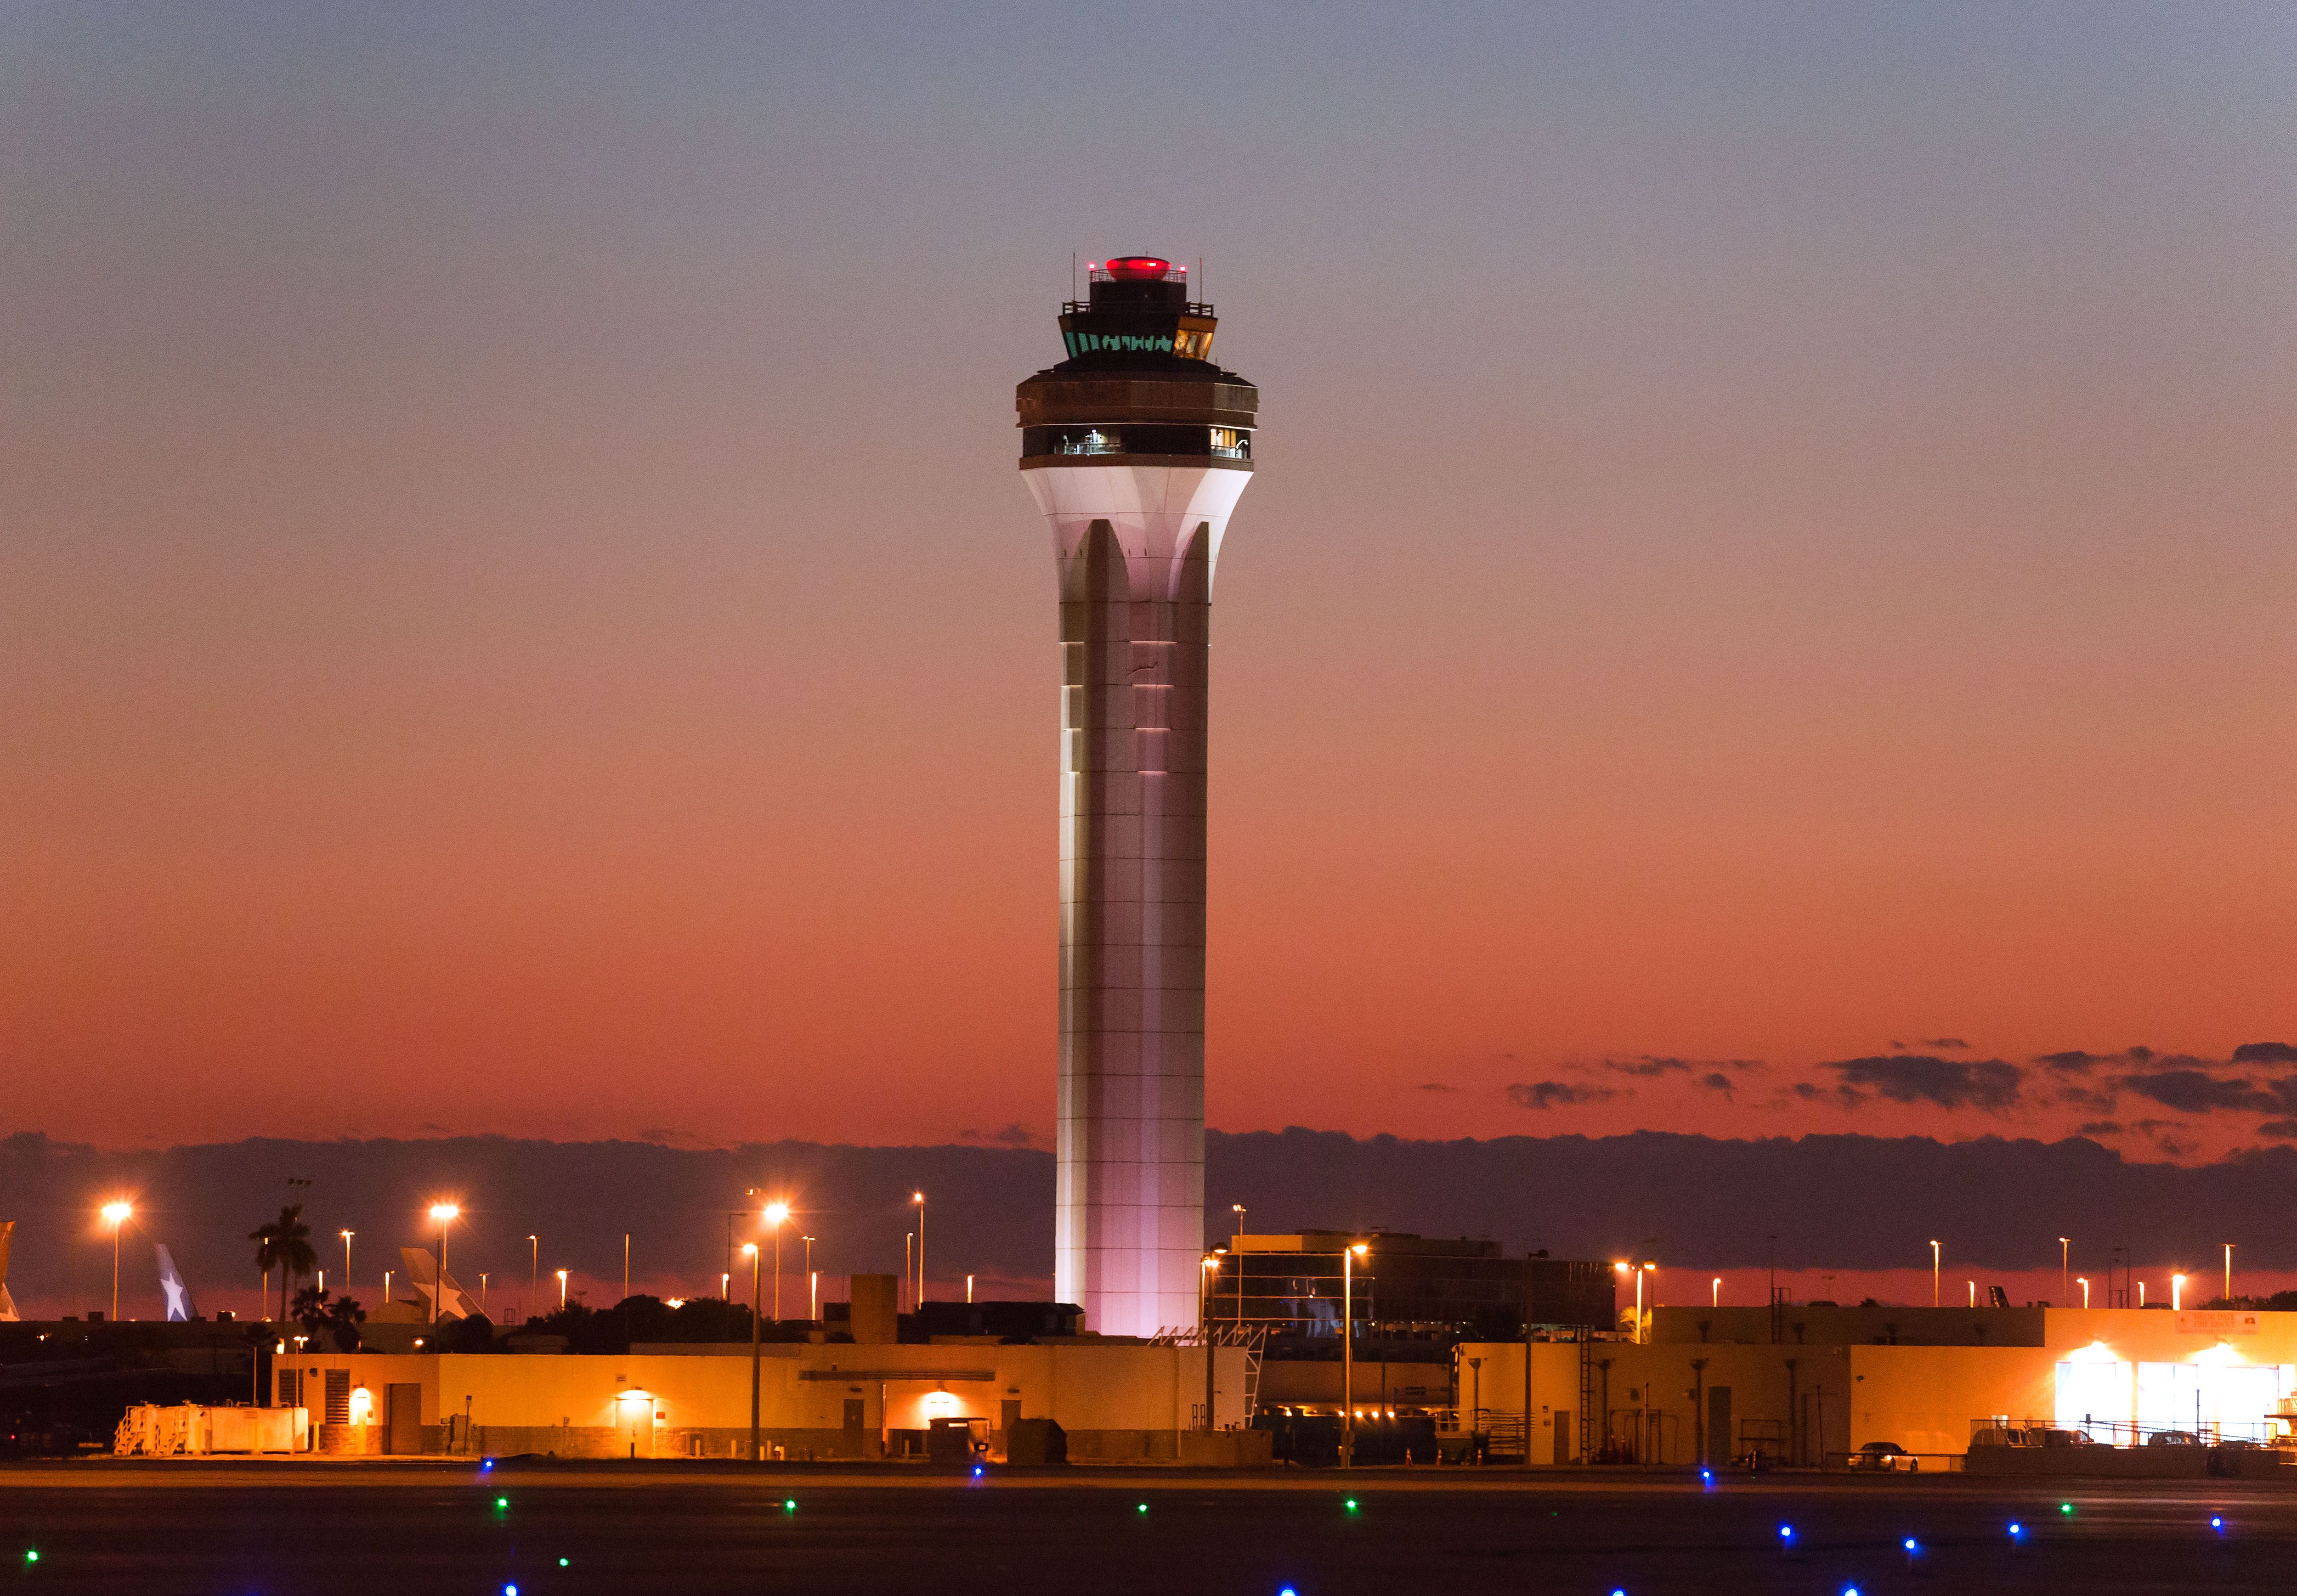 Miami Airport ATC Tower